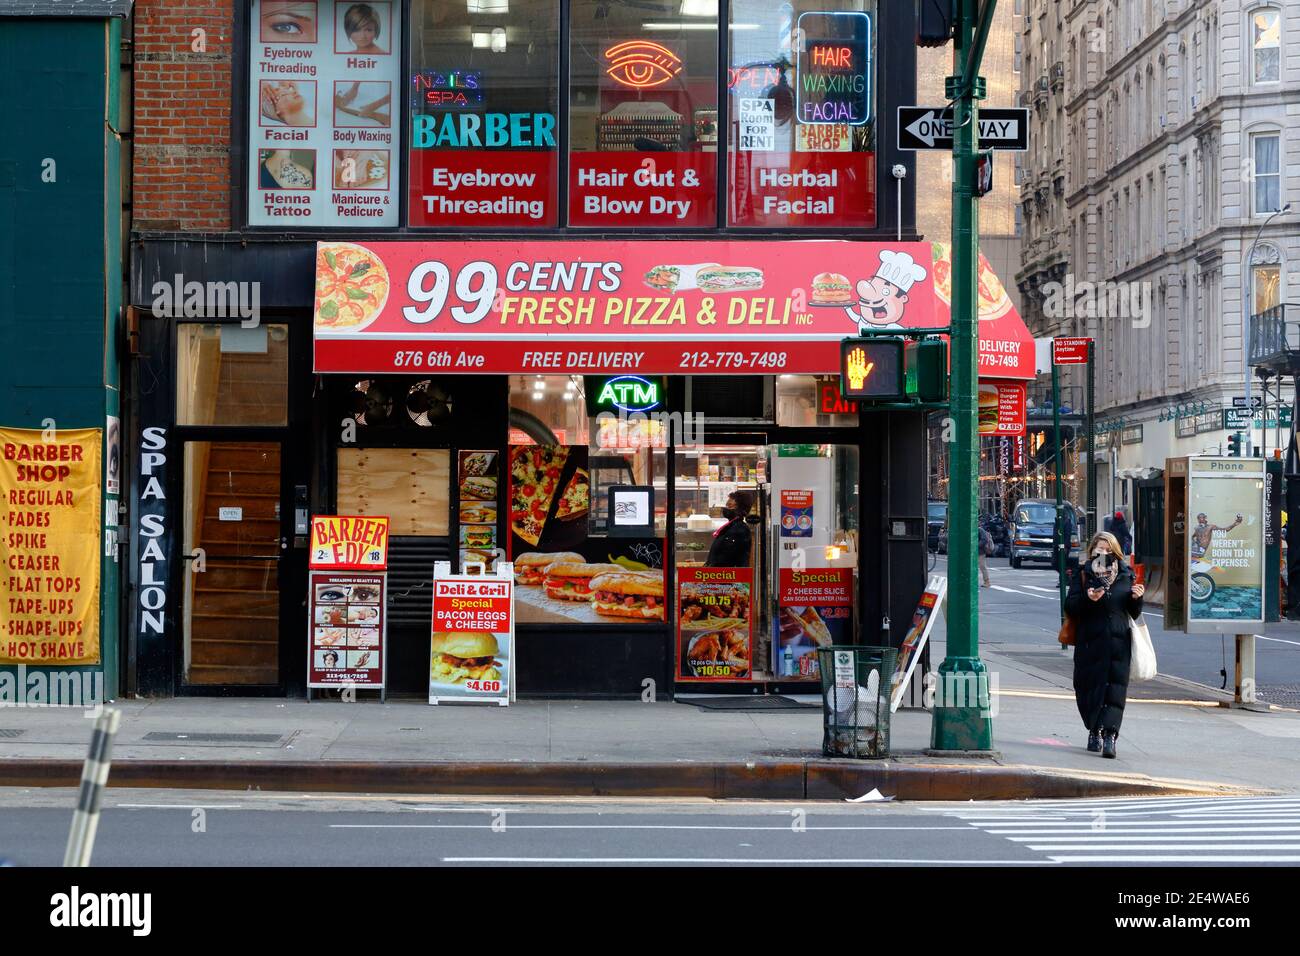 Ein Friseursalon und ein 99-Cent-Pizza-Deli-Lebensmittelgeschäft, 876 6. Ave, New York, NYC Schaufenster Foto von kleinen Unternehmen in Midtown Manhattan Stockfoto